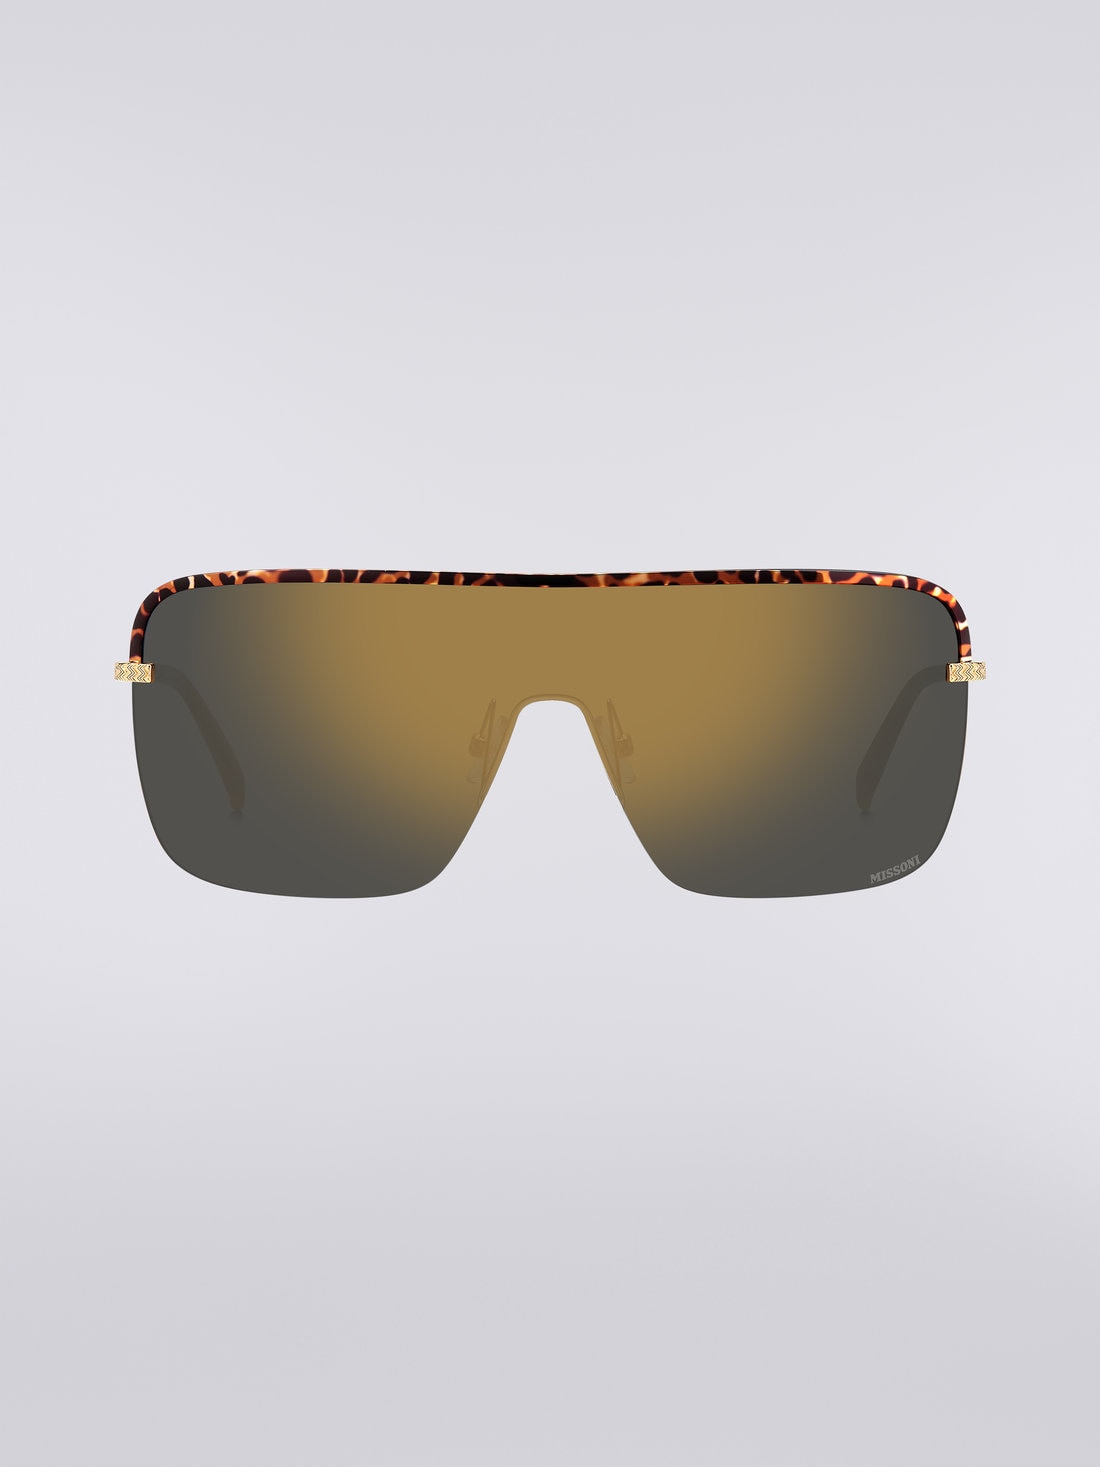 Missoni Seasonal Metal Sunglasses, Multicoloured  - 8051575840210 - 0